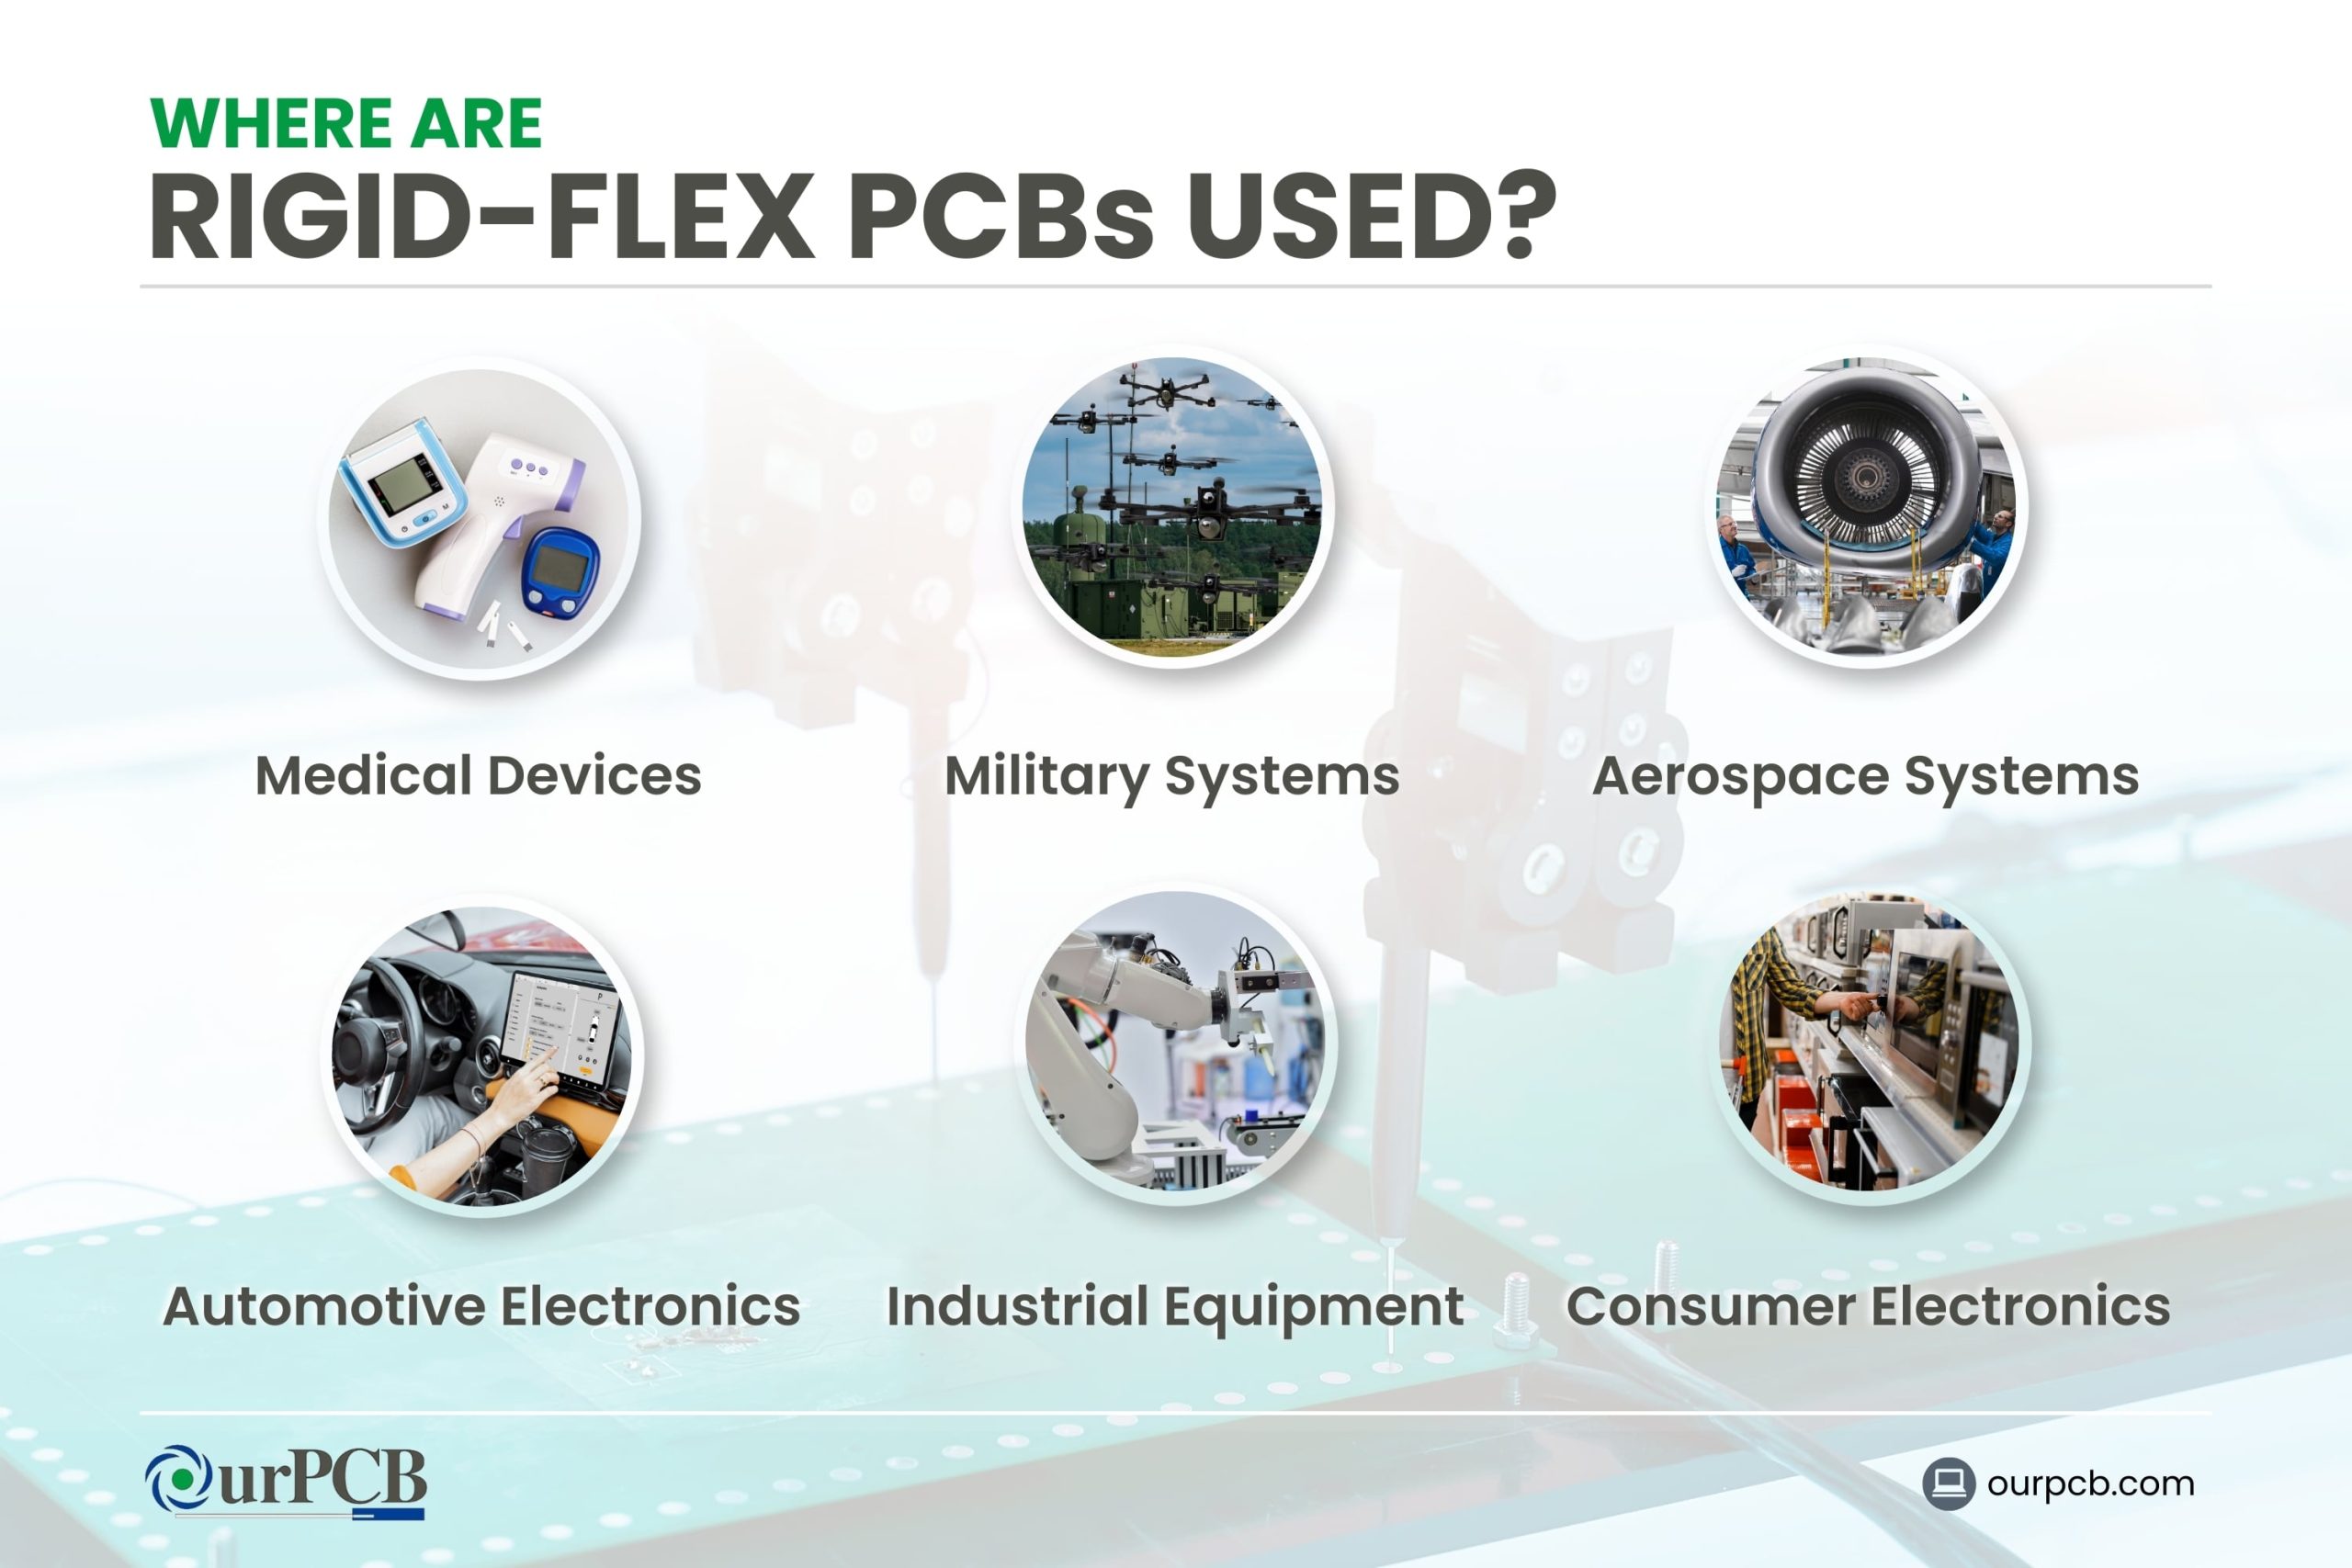 Where Are Rigid-Flex PCBs Used?